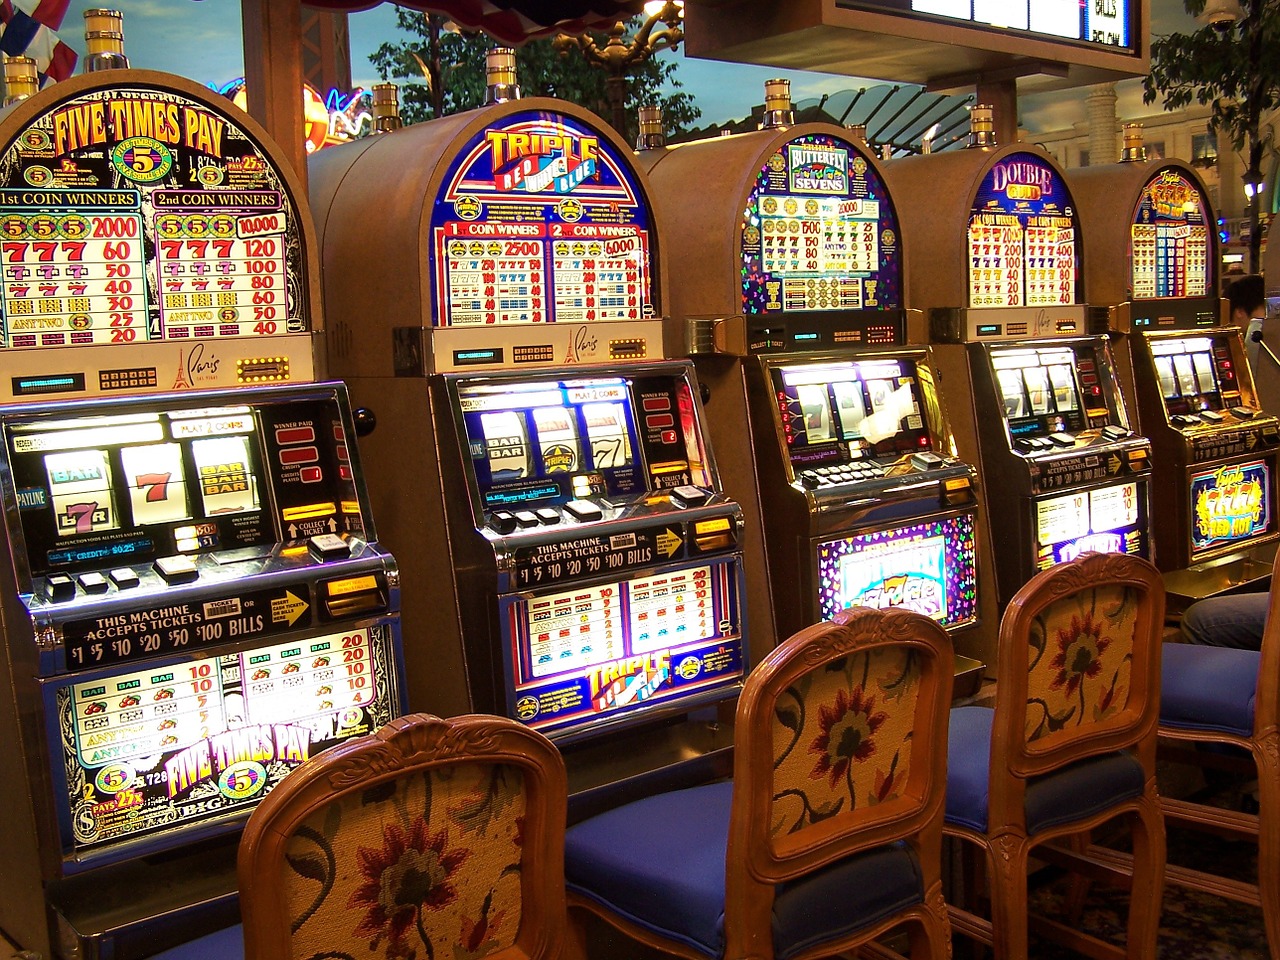 chyby hráčů v kasinu je nezbytný pro váš úspěch. Přečtěte si toto, abyste zjistili proč